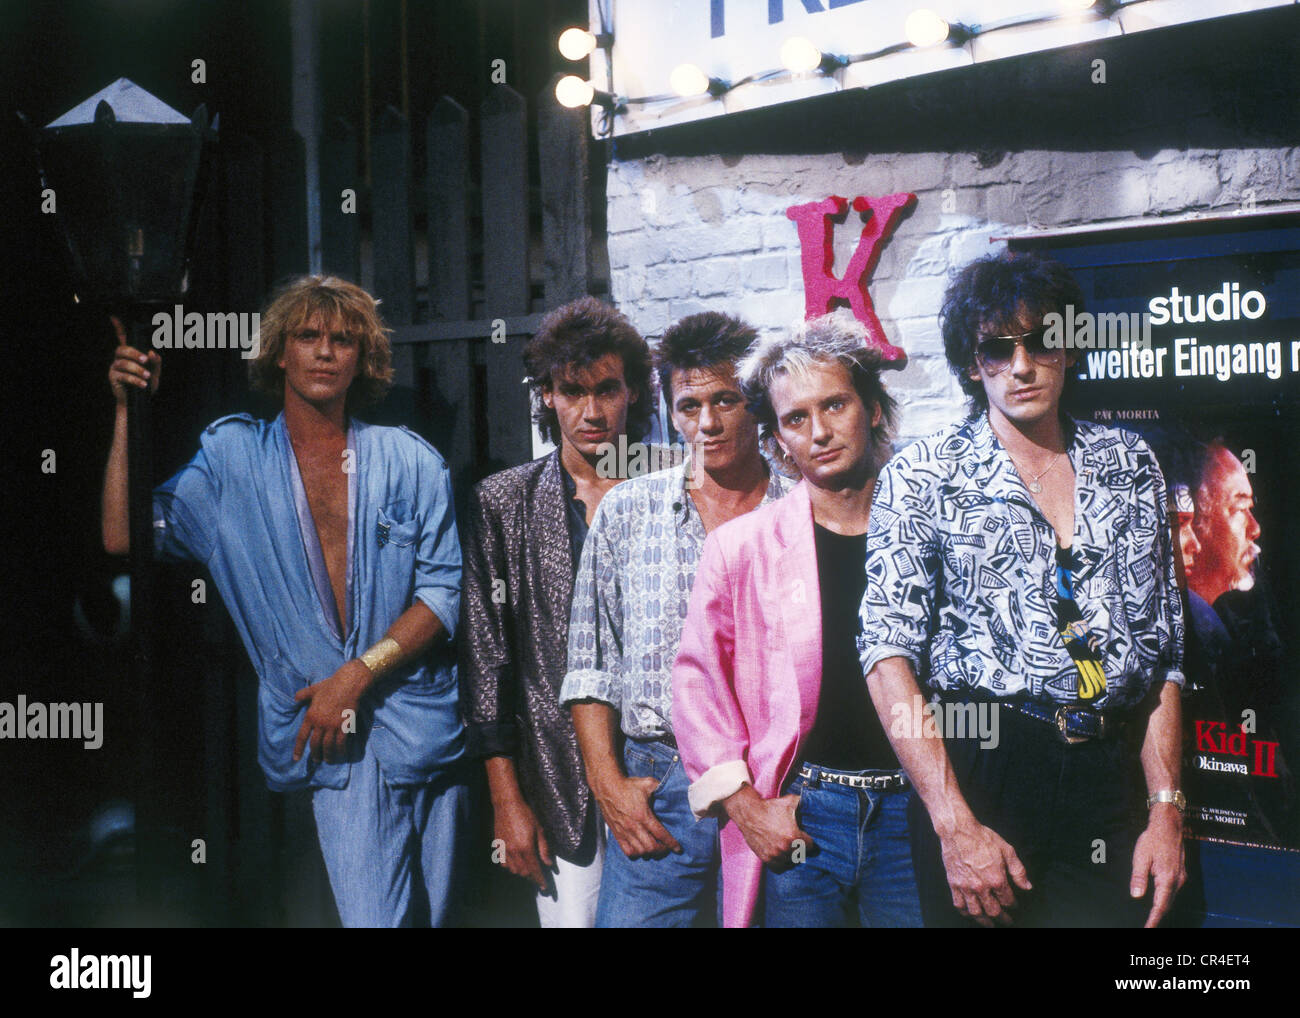 Münchener Freiheit, German band, founded 1981, Aron Strobel, Alex Grünwald, Rennie Hatzke, Micha Kunzi, Stefan Zauner, group picture, 1980s, Stock Photo